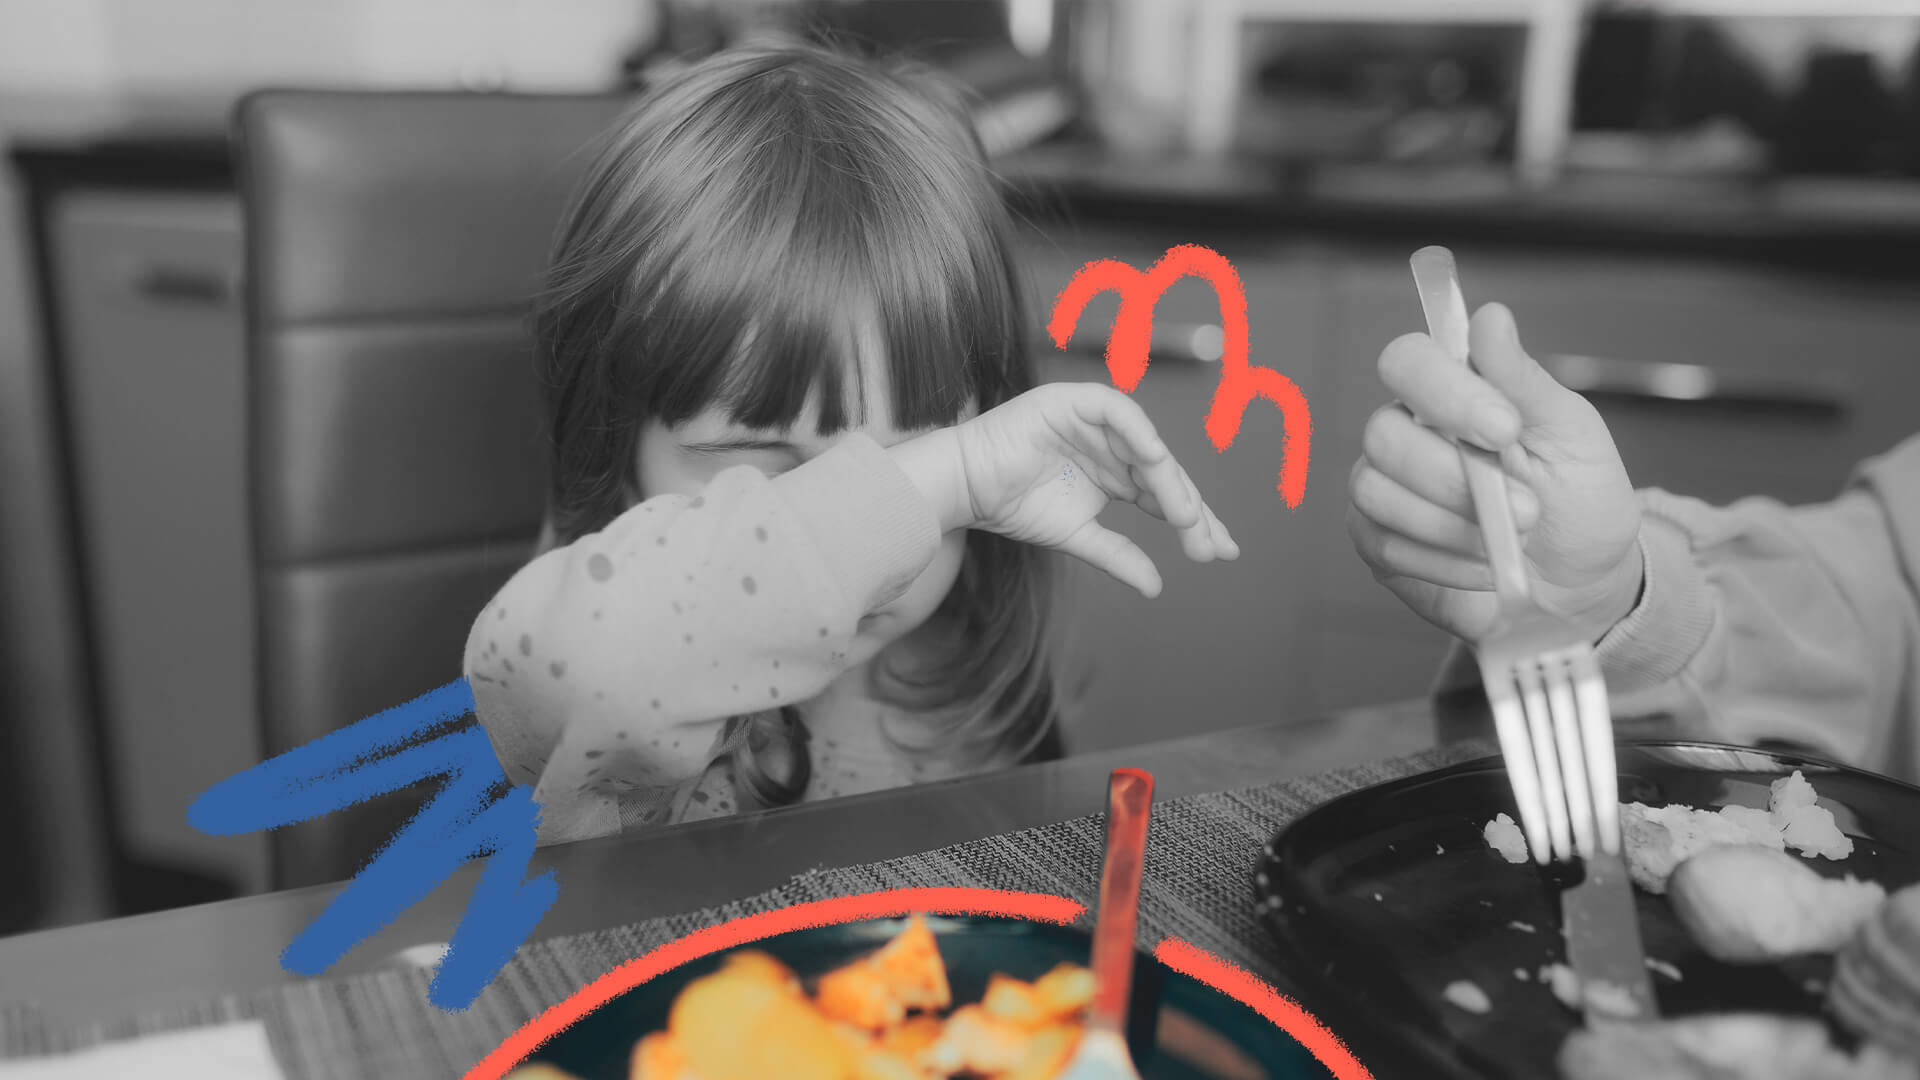 Foto em preto e branco de uma menina de franja cobrindo o rosto com o braço diante de um prato de comida. A matéria fala sobre transtorno alimentar na infância